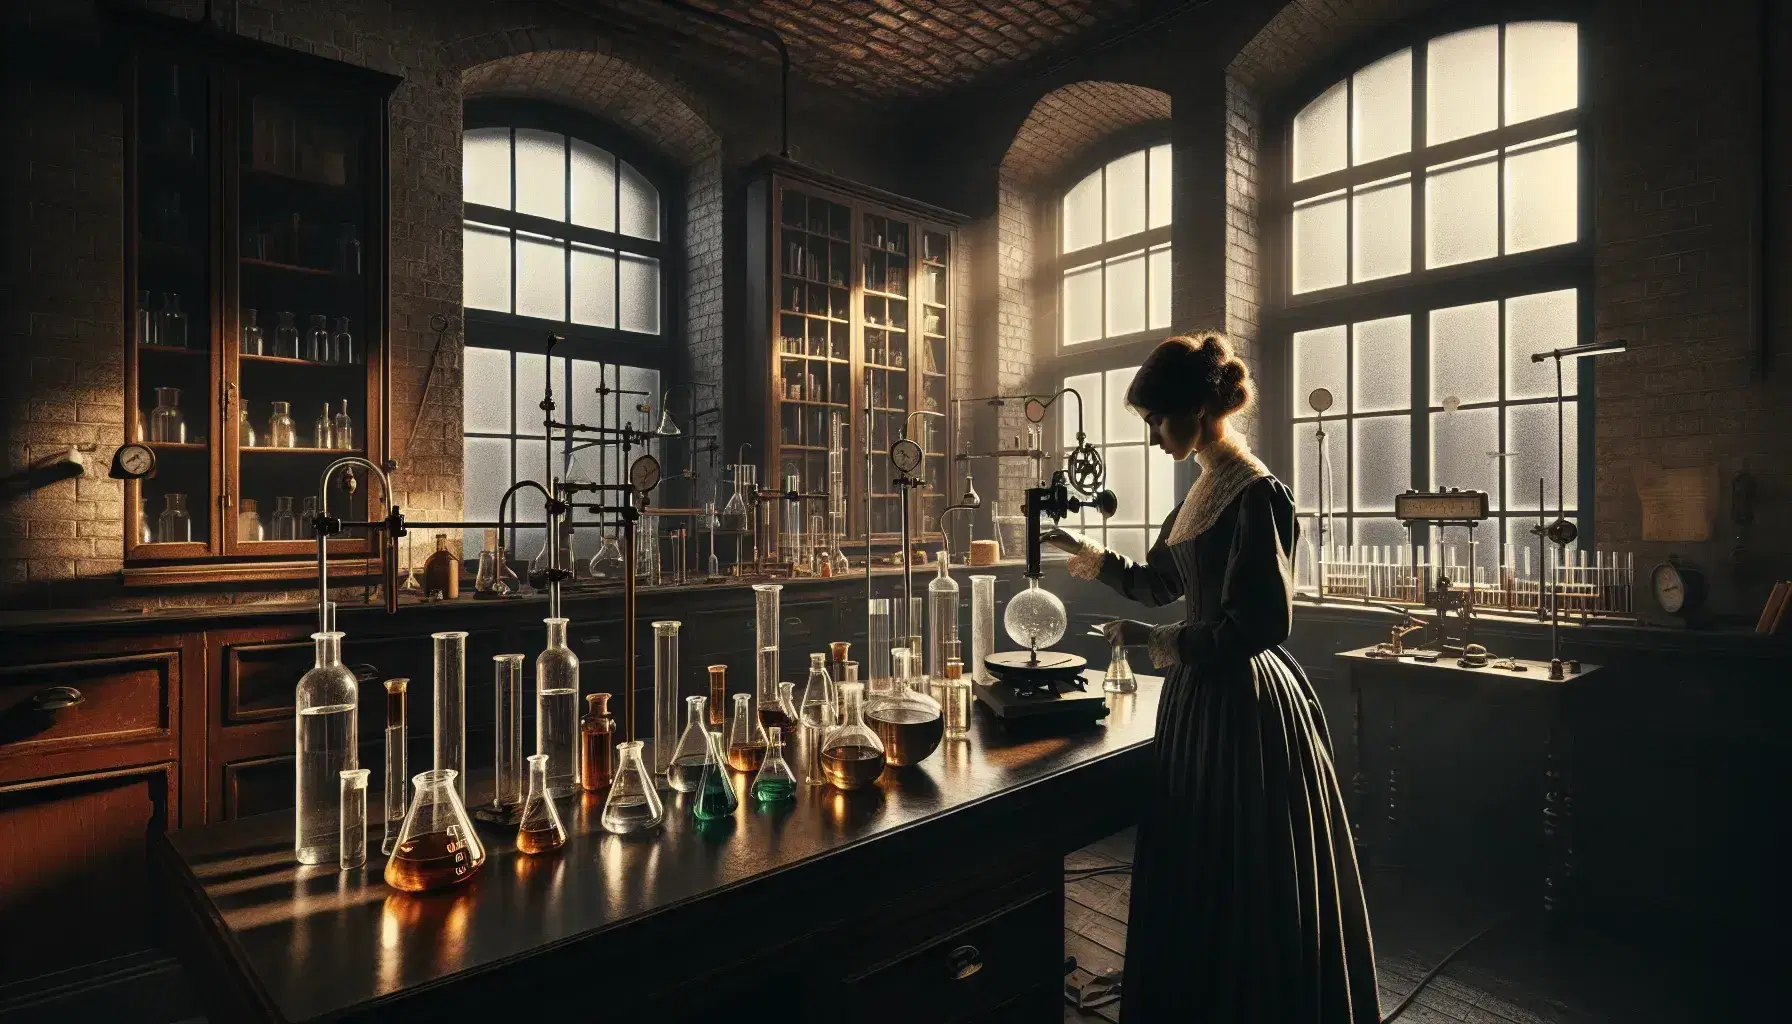 Laboratorio scientifico vintage con pareti in mattoni a vista, tavolo in legno con strumenti, donna in camice versa sostanze.